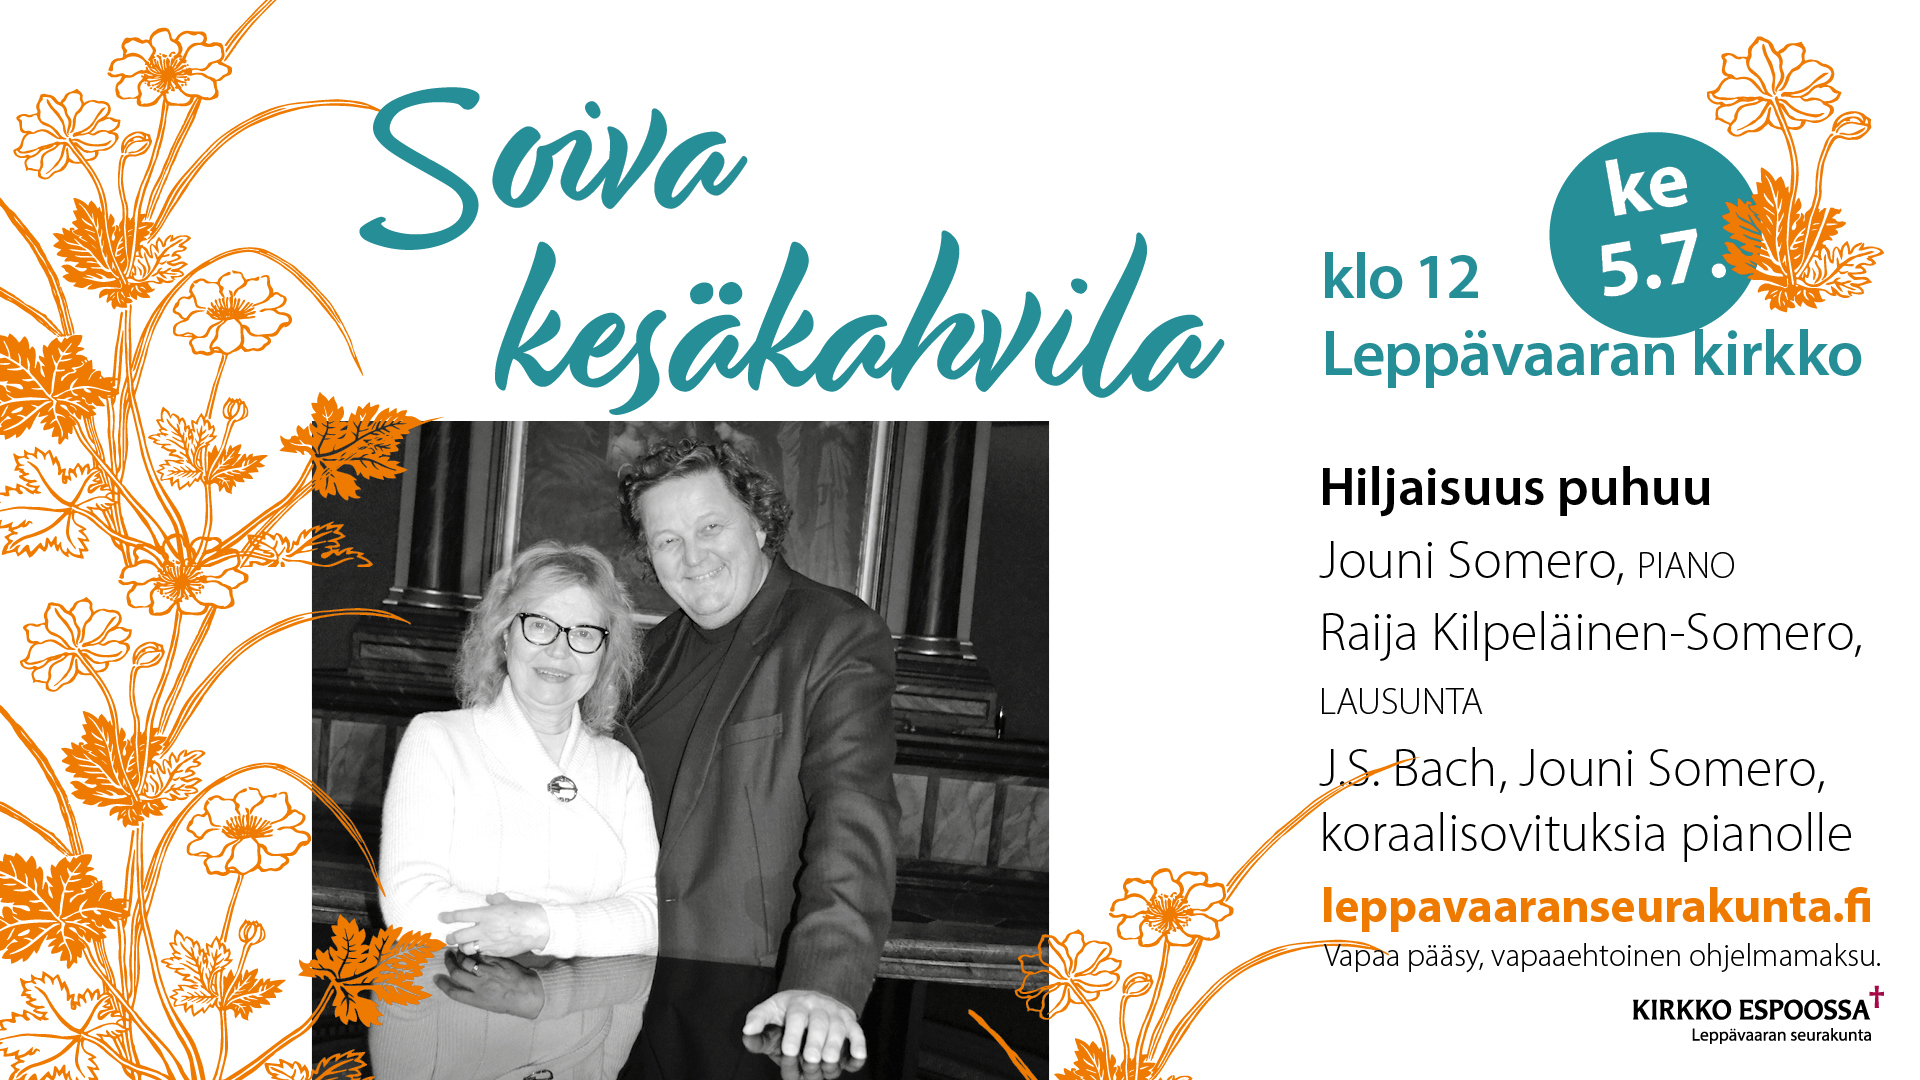 Jouni Somero ja Raija Kilpeläinen-Somero kuvassa pianoon nojaten. Vieressä konsertin erittelytekstit.